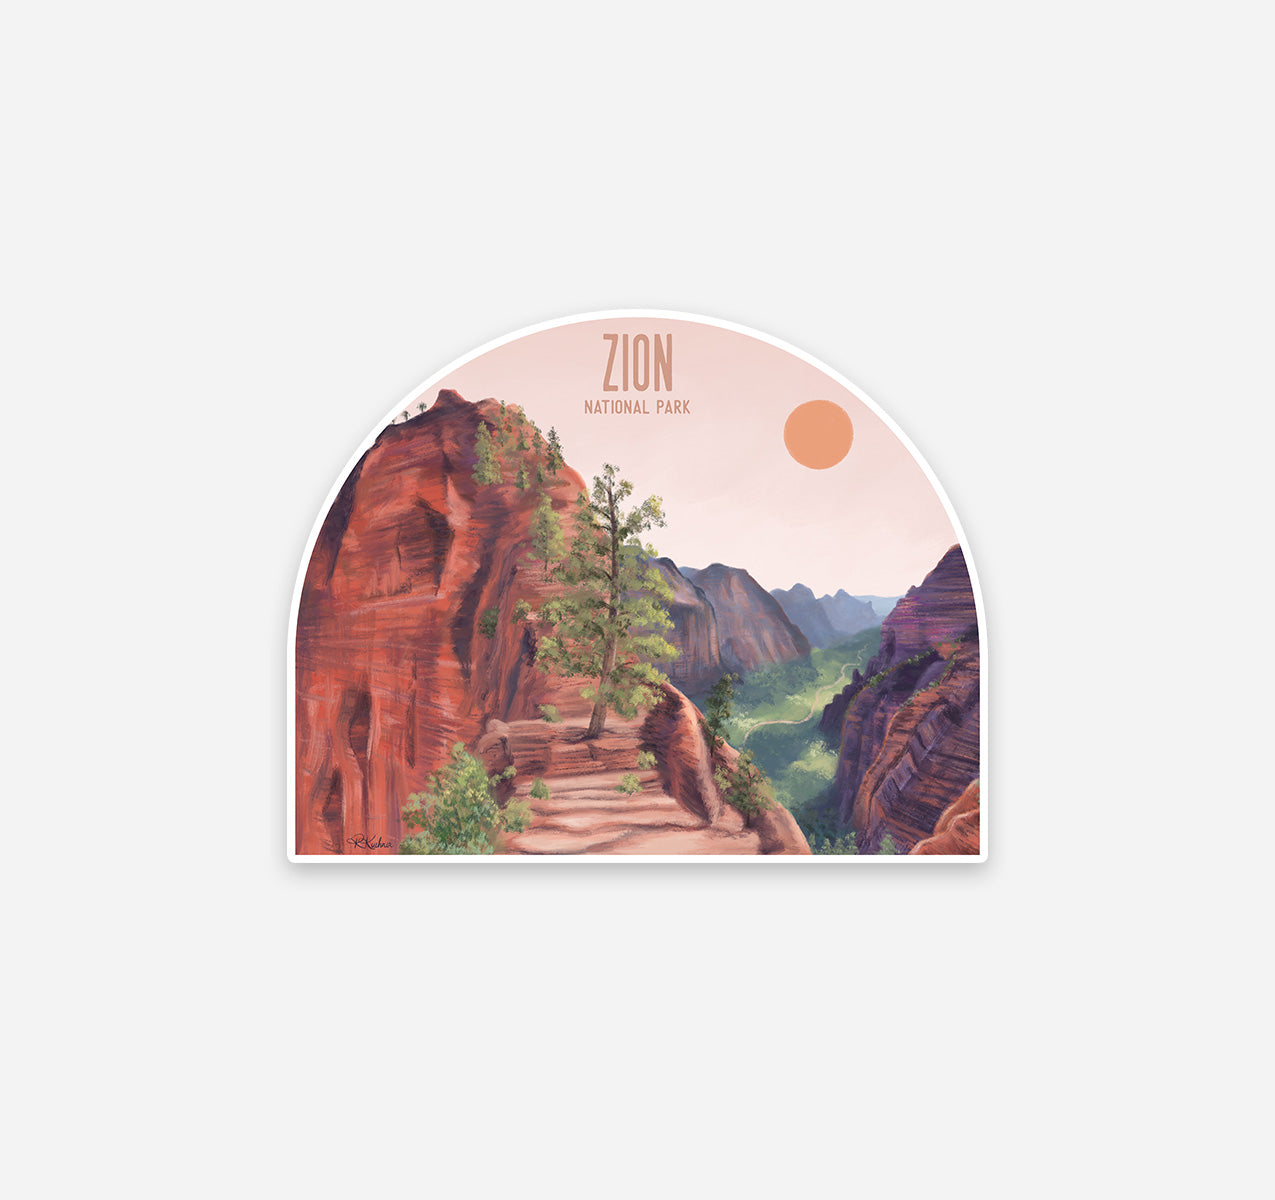 Zion National Park sticker